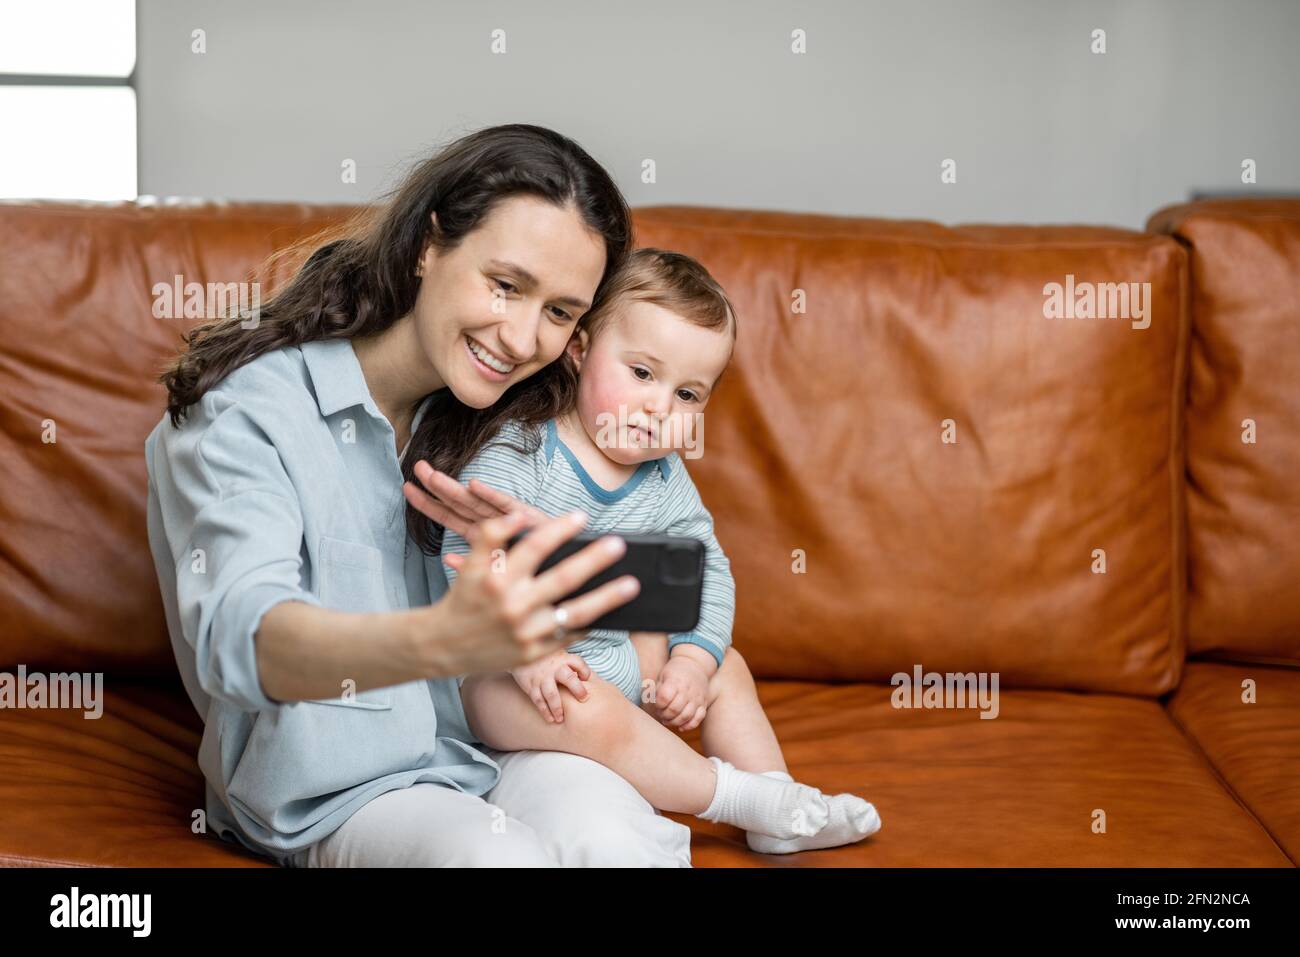 Mamá joven sentada con un hijo recién nacido en el sofá y haciendo una videollamada o haciendo una auto con el bebé. Entretenga al niño con el teléfono. Foto de stock